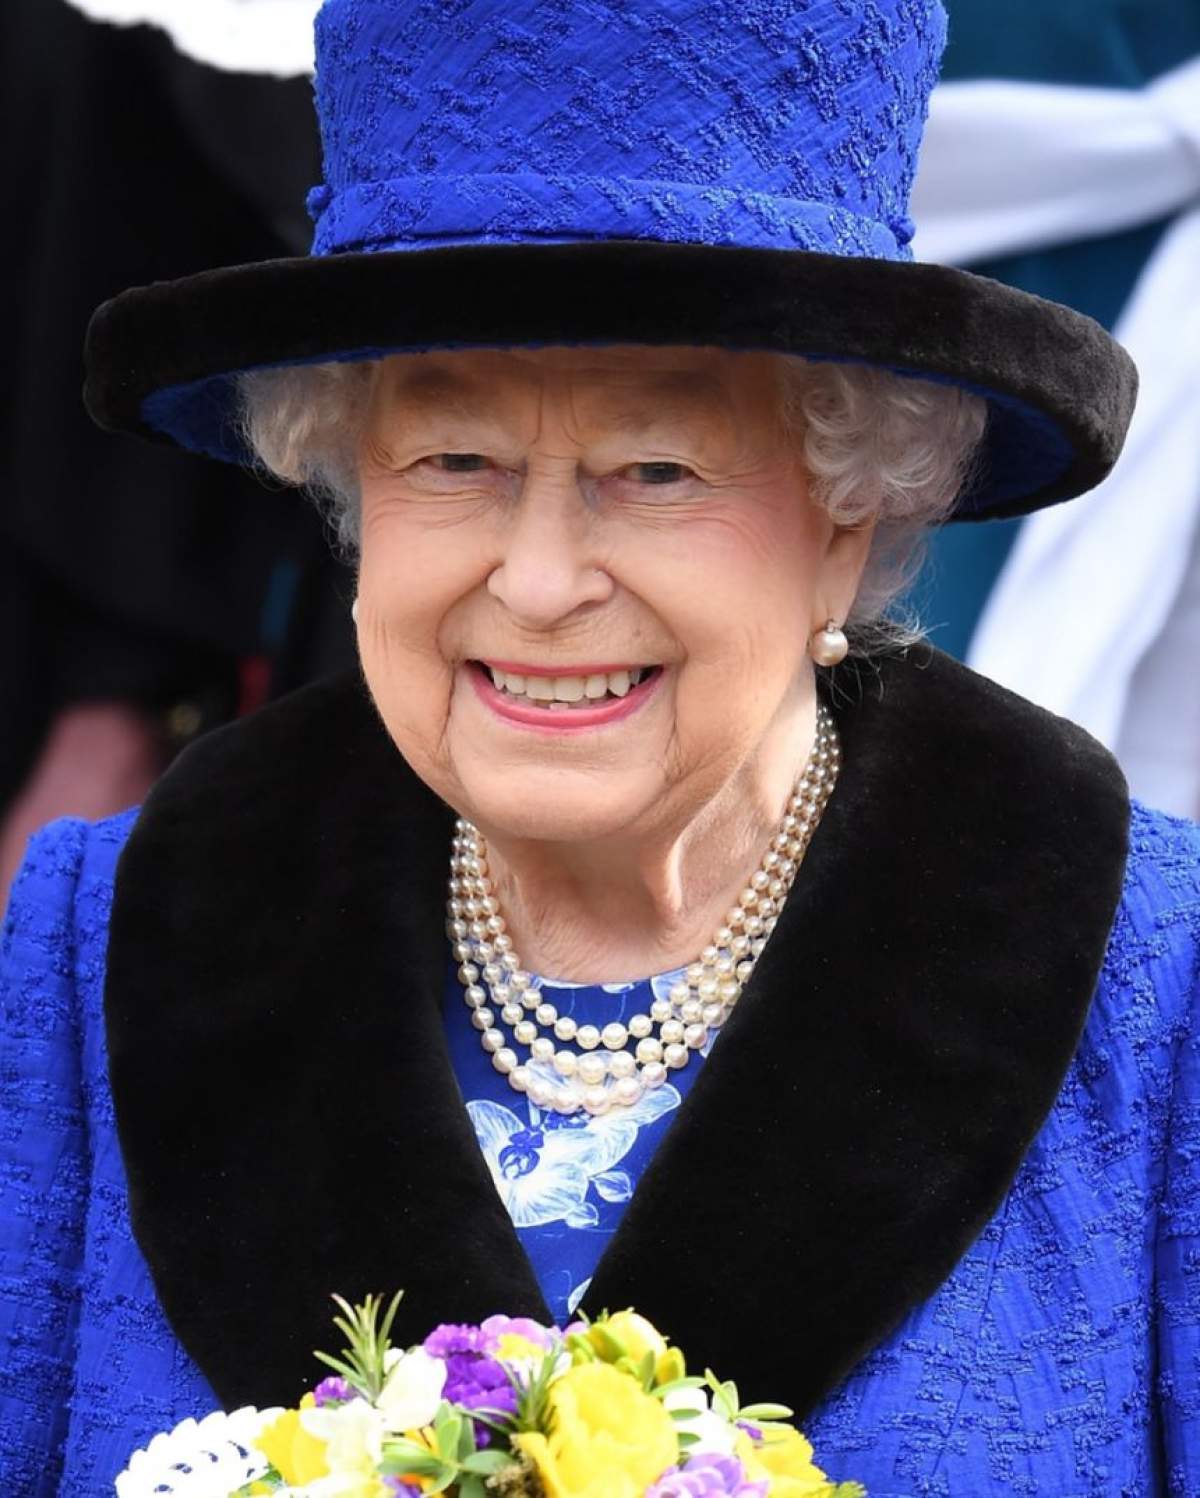 FOTO / Regina Elisabeta, mai şic ca oricând. Suverana este o adevărată sursă de inspiraţie pentru Kate Middleton şi Meghan Markle